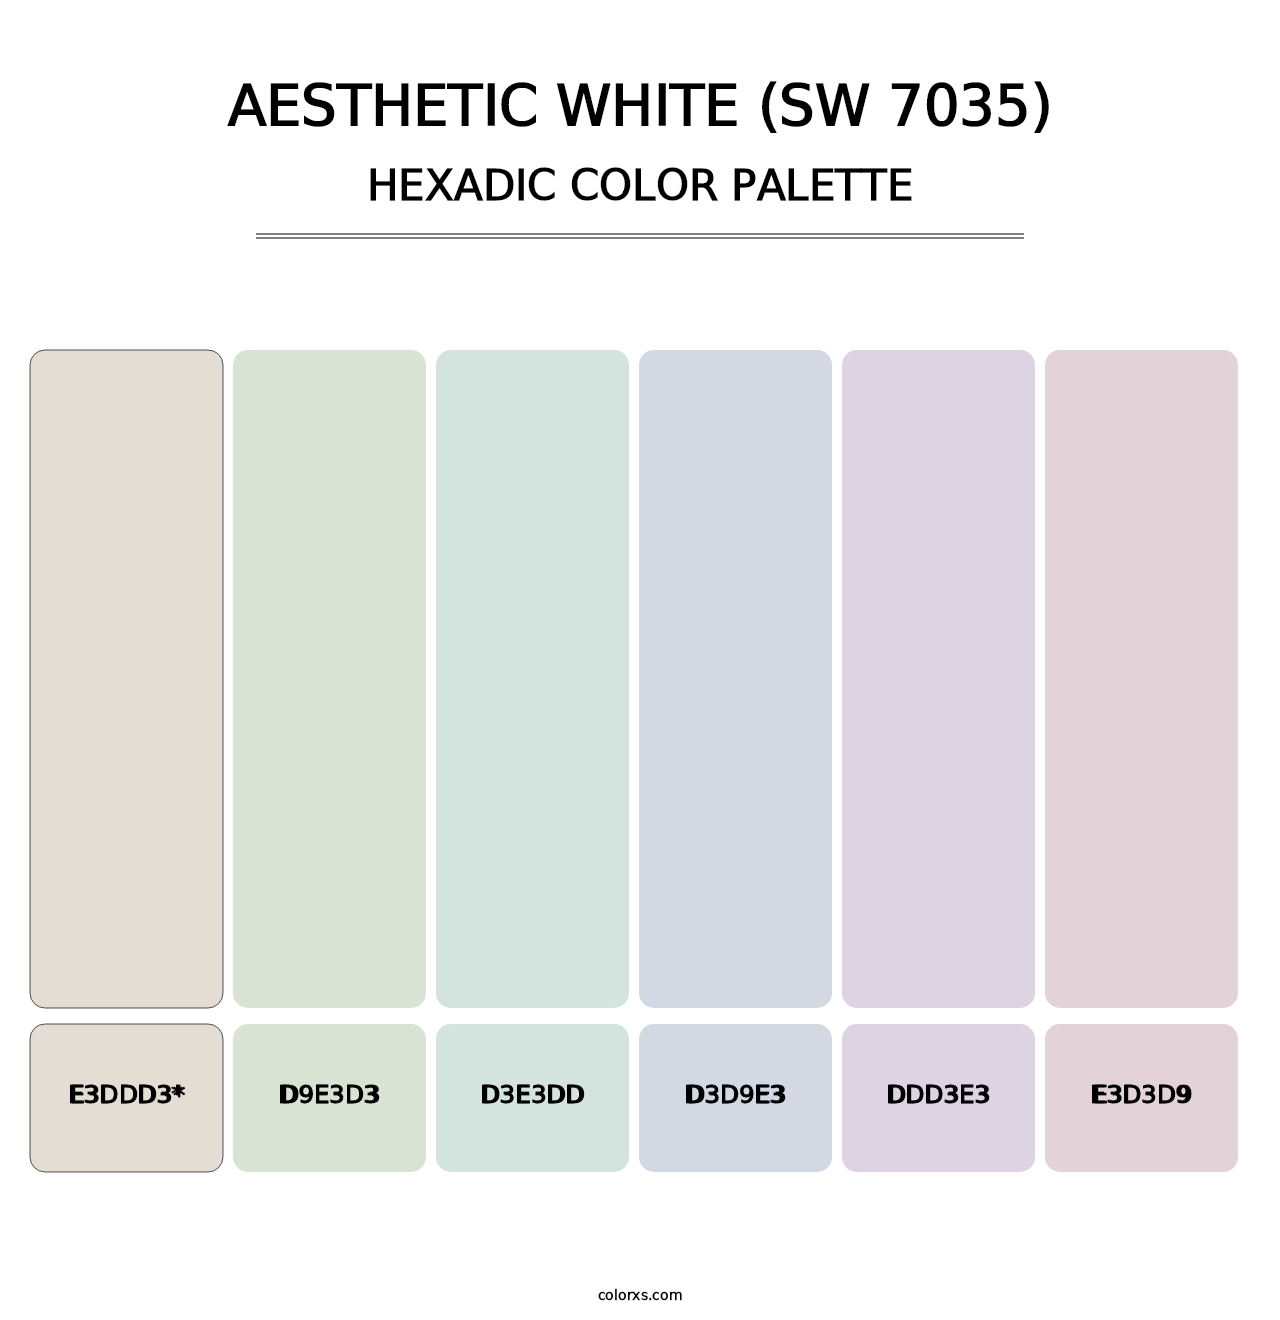 Aesthetic White (SW 7035) - Hexadic Color Palette